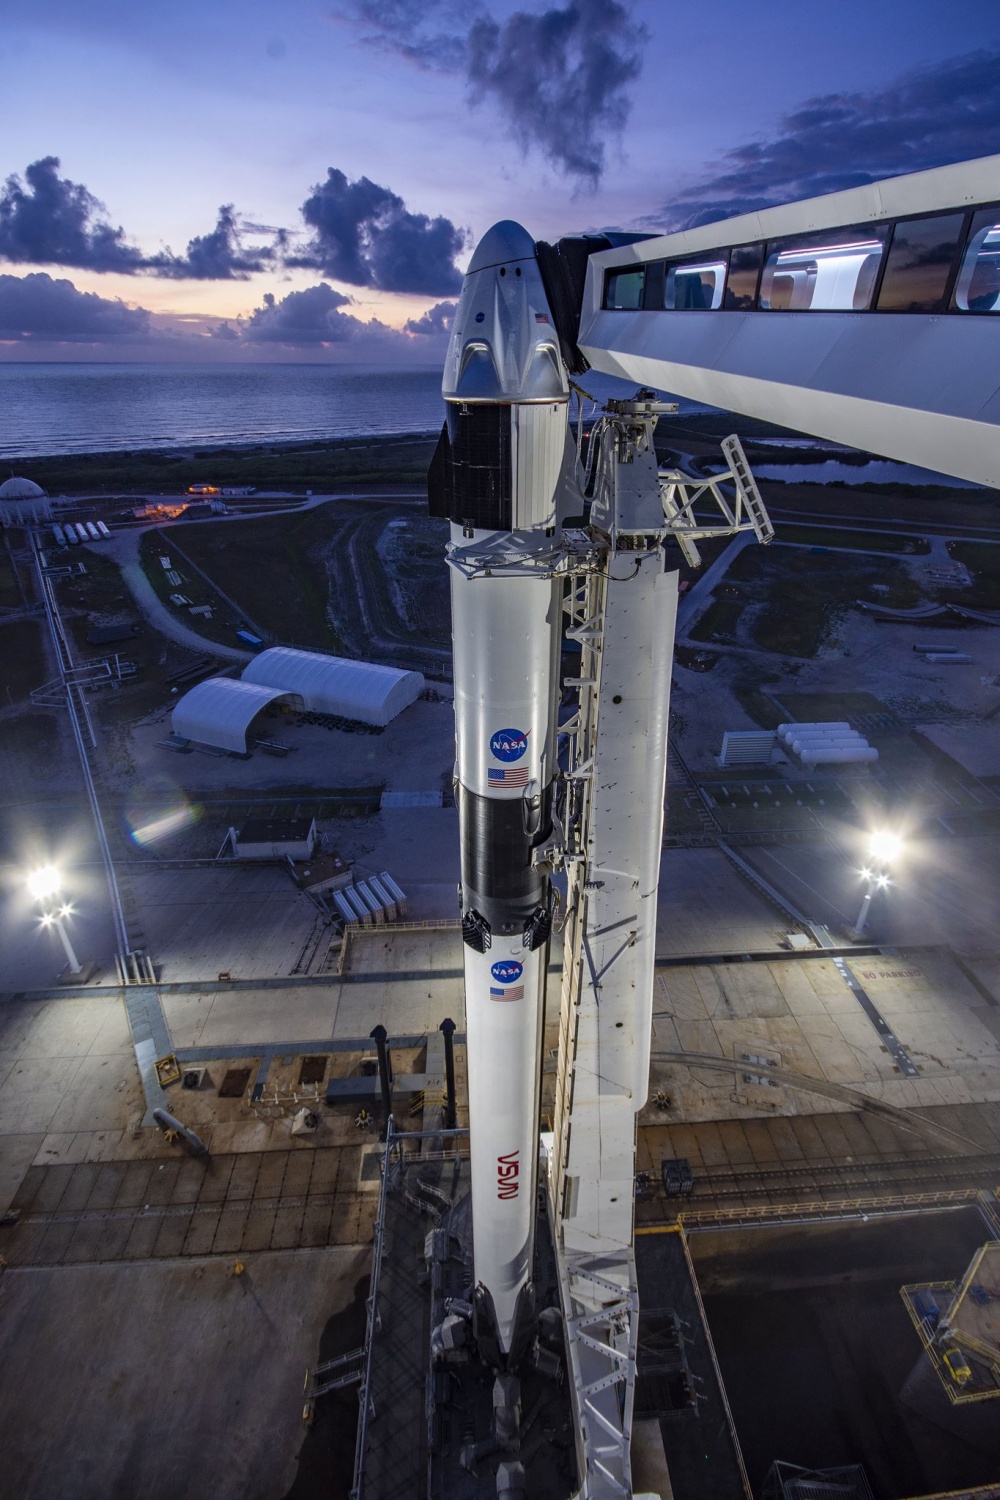 Falcon 9 avaruusalus nokassaan laukaisualustalla